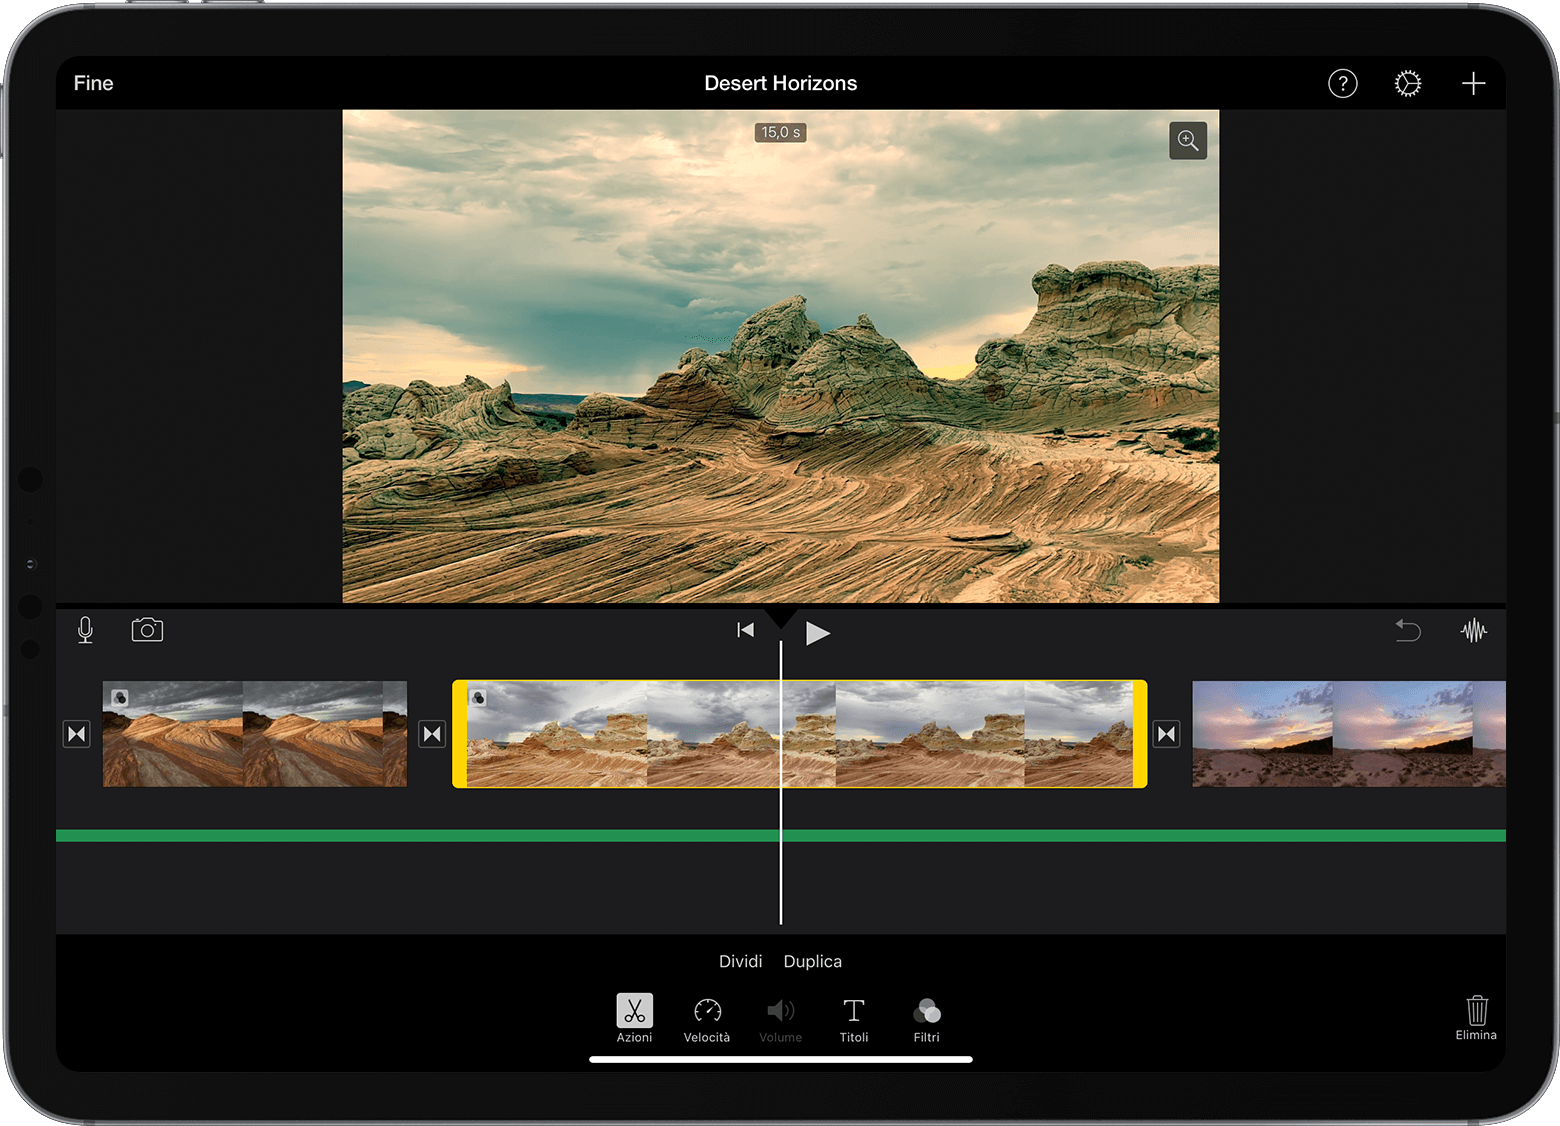 Progetto iMovie su iPad aperto con un clip video selezionato nella timeline